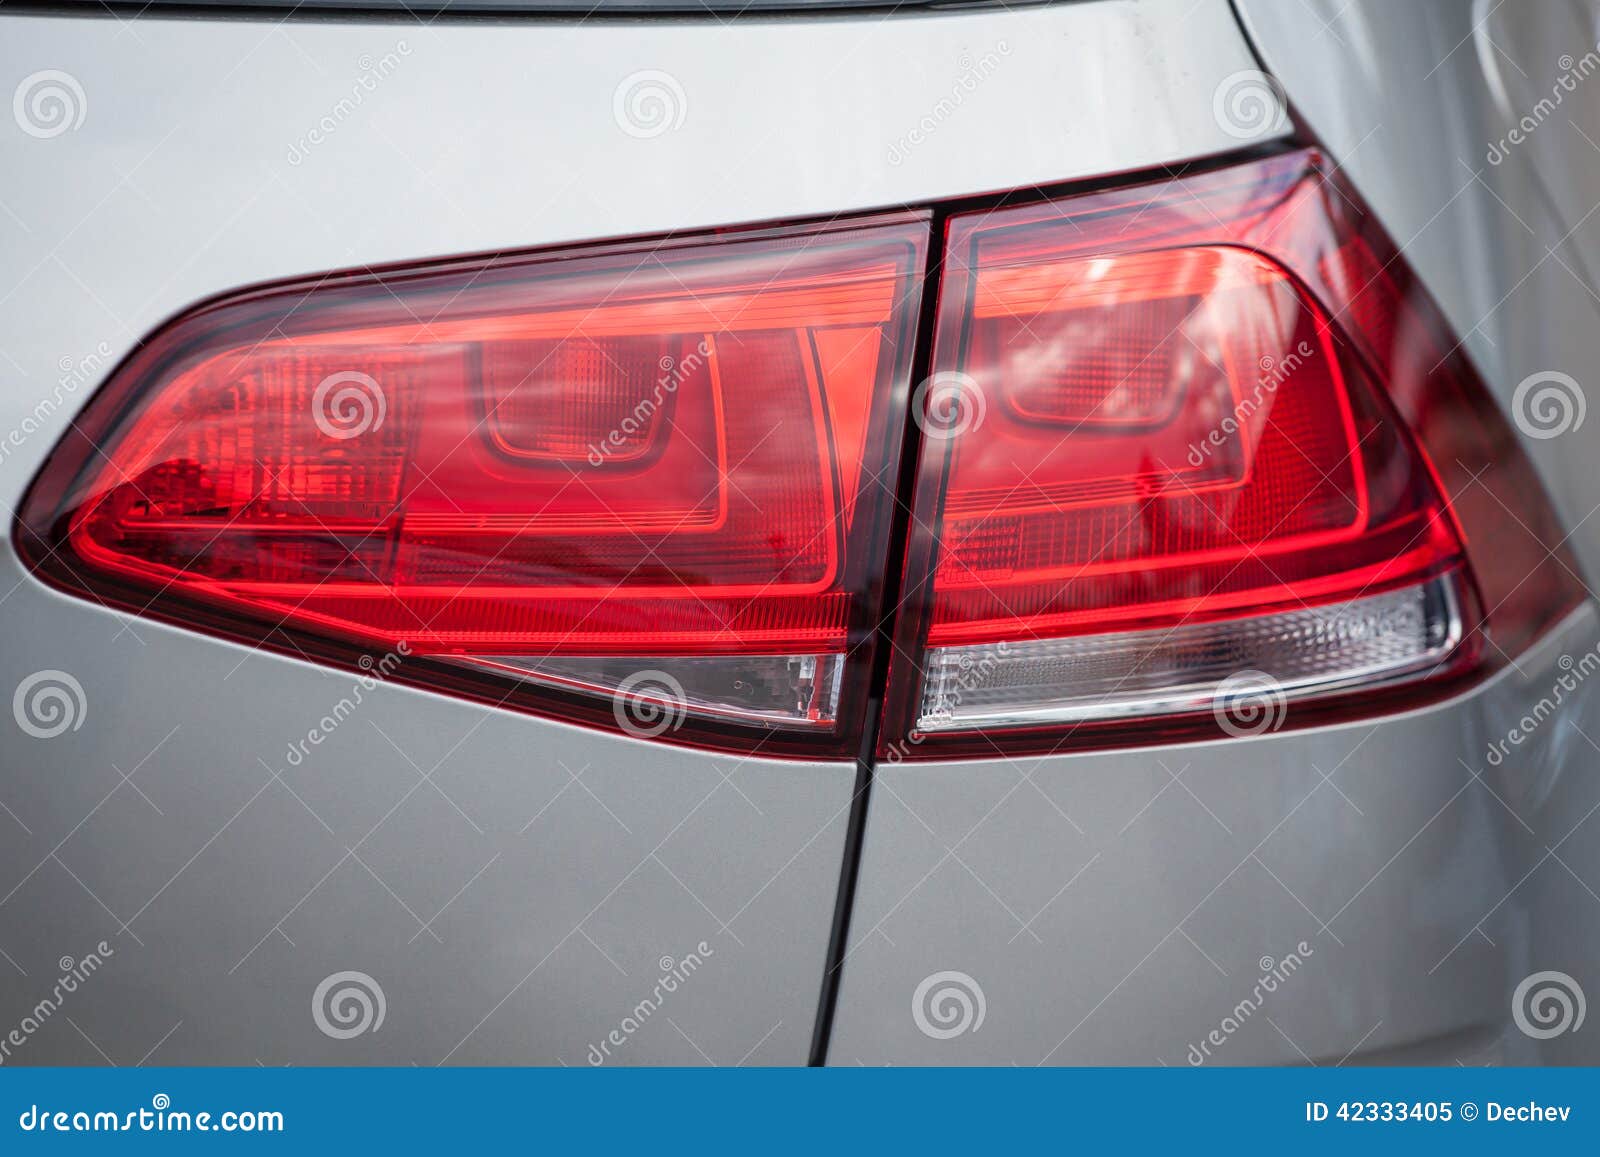 doe alstublieft niet Almachtig juni Een Achterlicht Op Een Moderne Auto Stock Afbeelding - Image of vervoer,  einde: 42333405